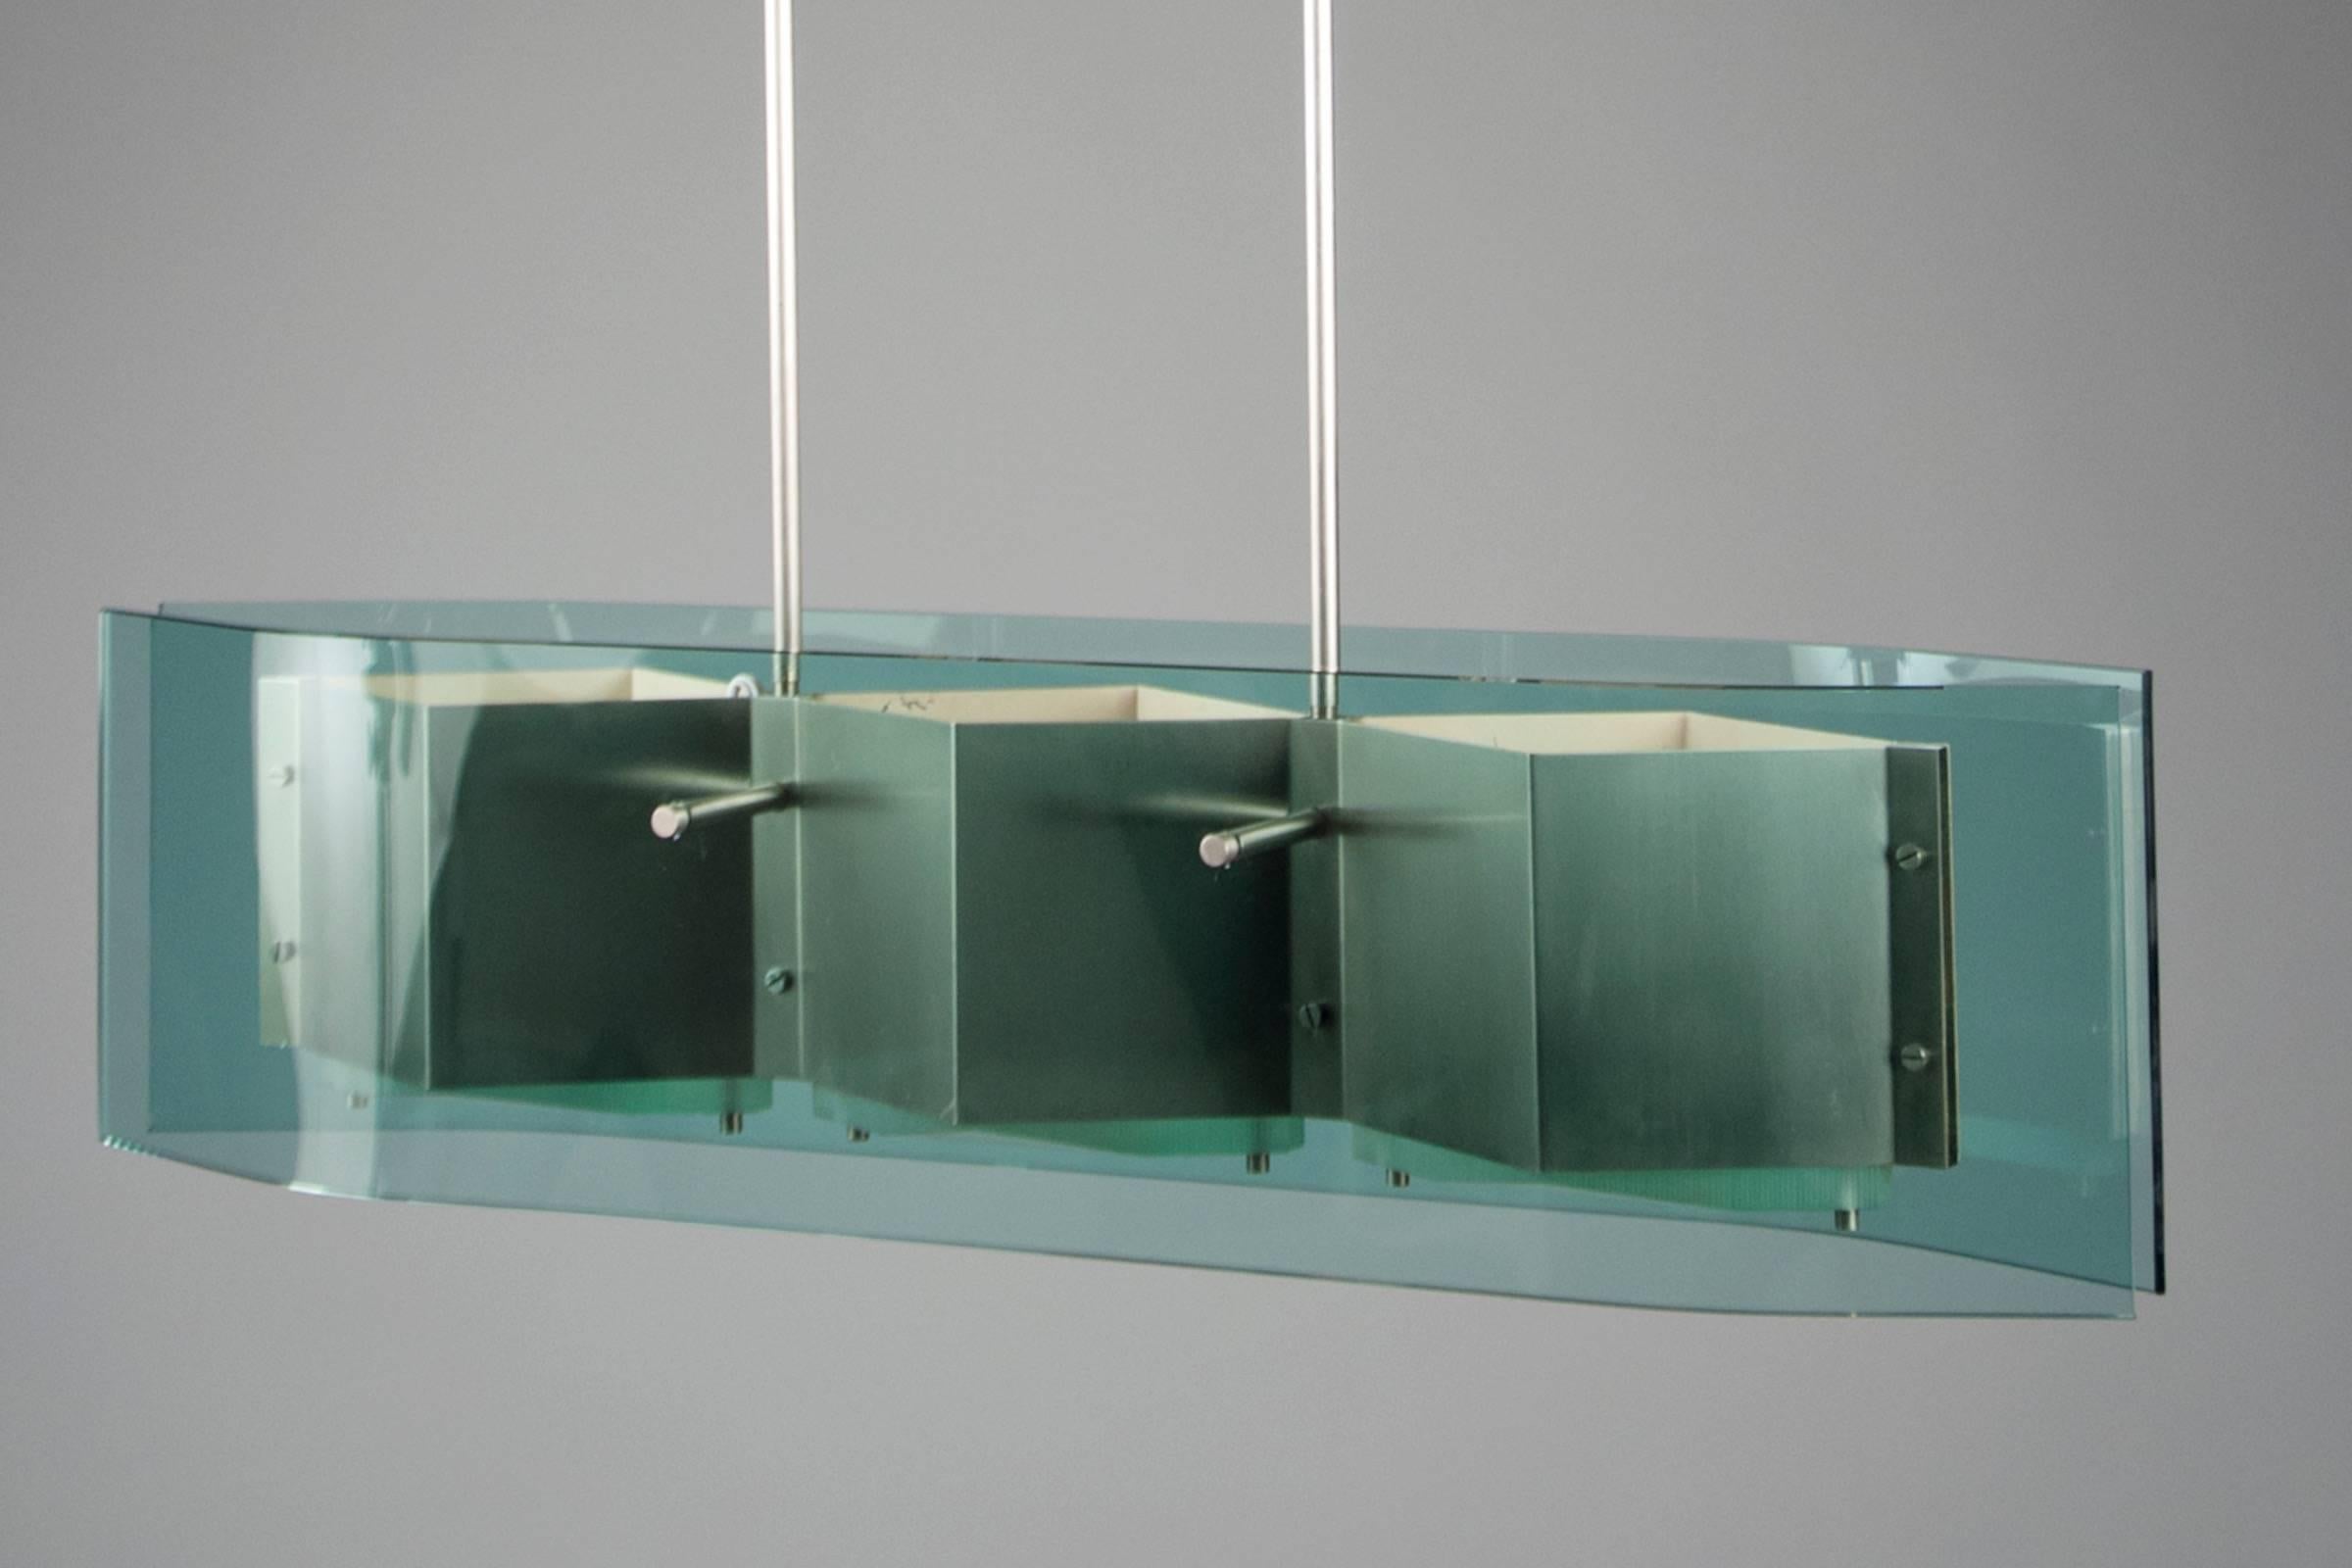 Deux tiges métalliques suspendant deux panneaux de verre incurvés bleu-vert englobant une structure en nickel en trois parties.
   

